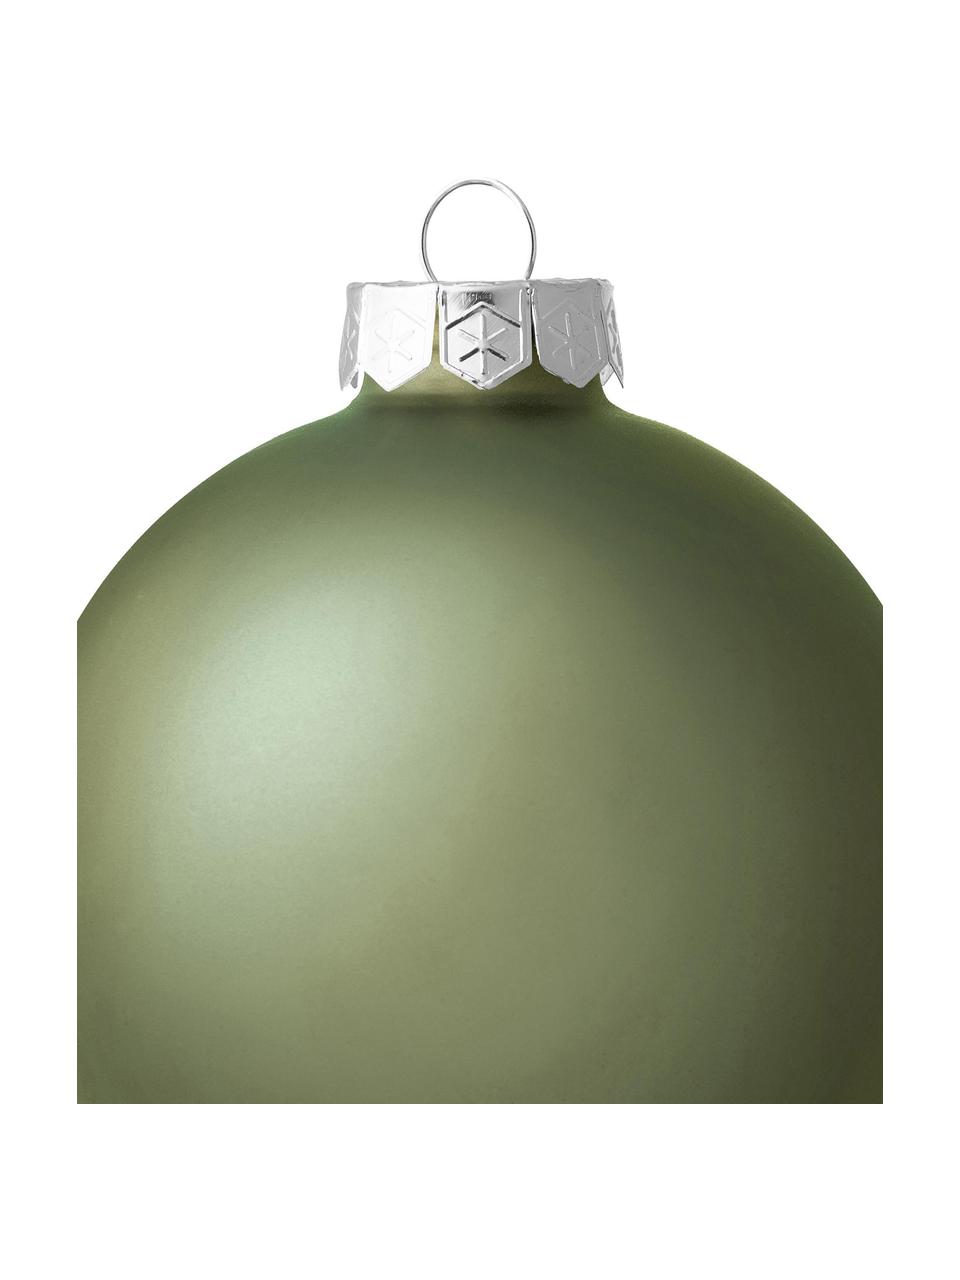 Kerstballenset Evergreen, 18 stuks, Saliegroen, Ø 8 x H 8 cm